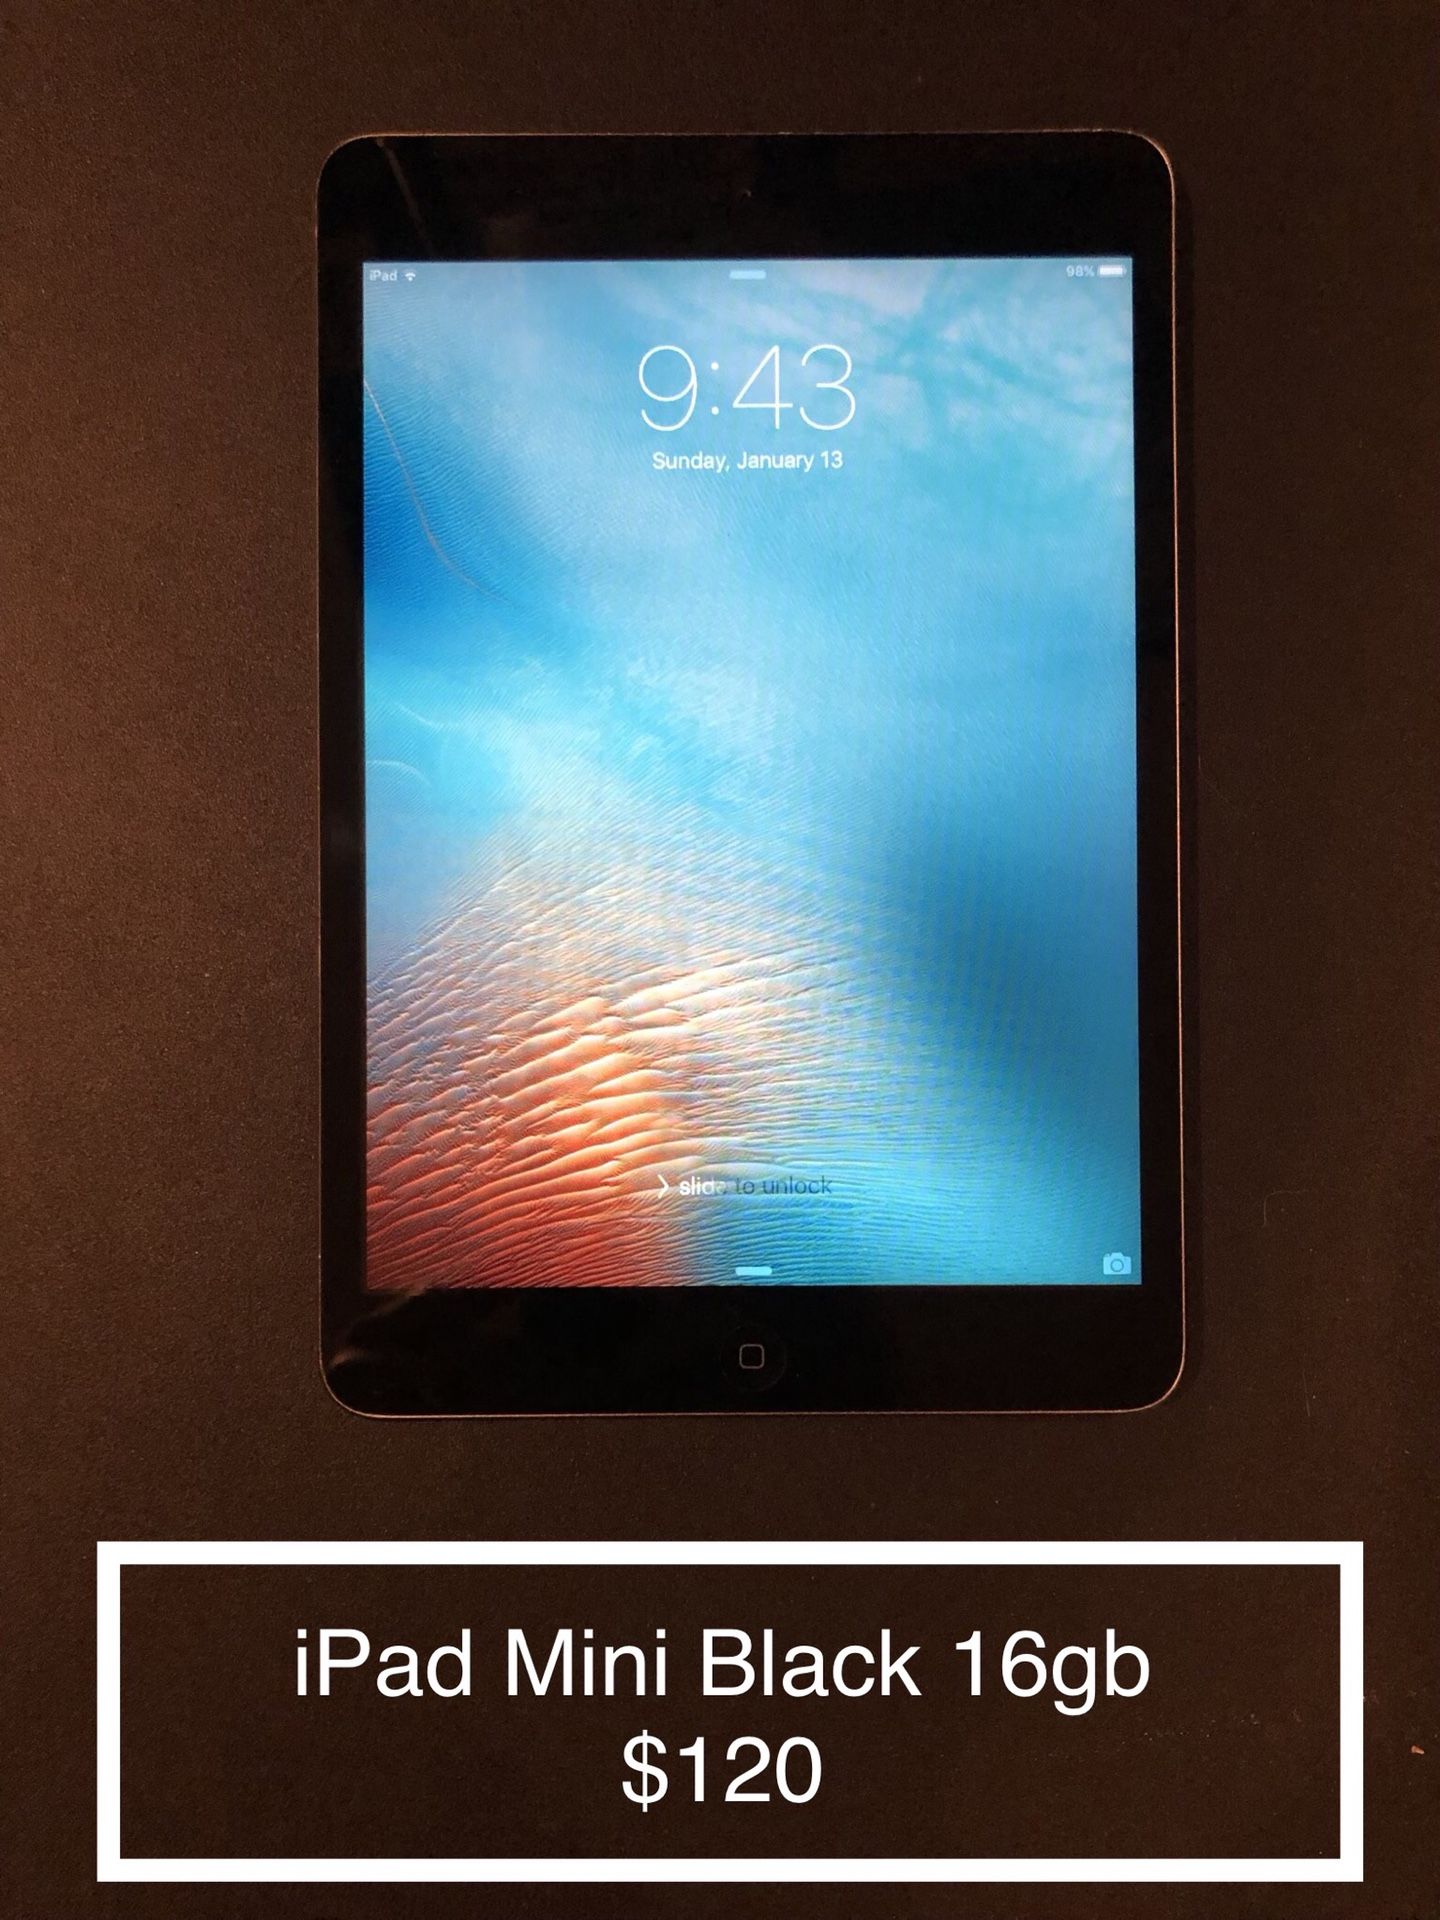 iPad Mini Black 16gb $120